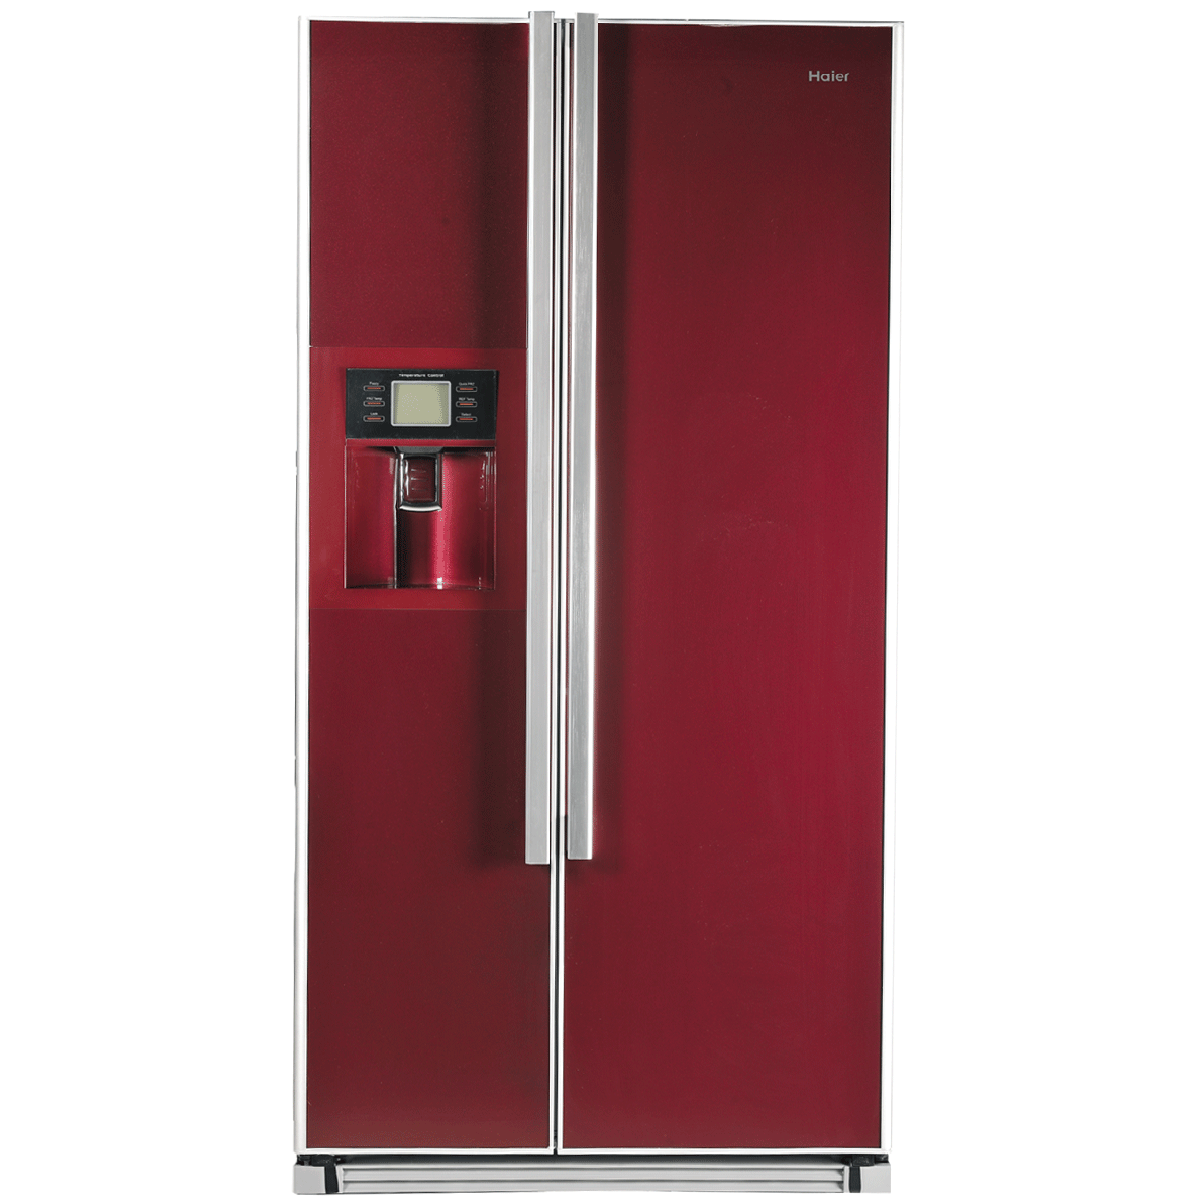 Immagine del frigorifero della doppia porta Immagine PNG